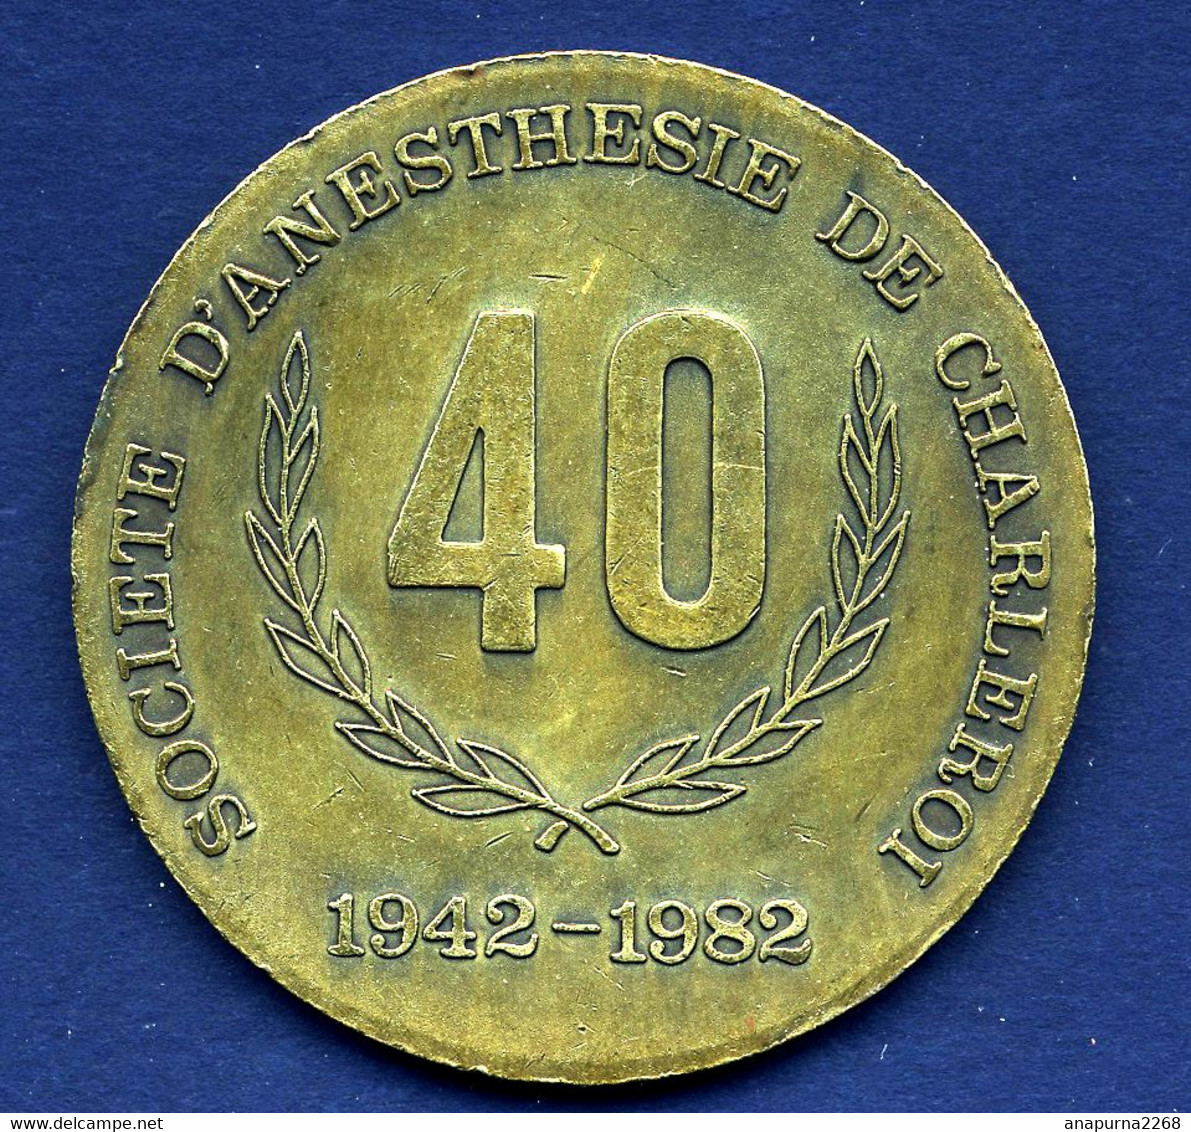 BELGIQUE ...MEDAILLE... 40 ANS DE LA SOCIETE D ANESTHESIE DE CHARLEROI......1942-1982 - Unternehmen